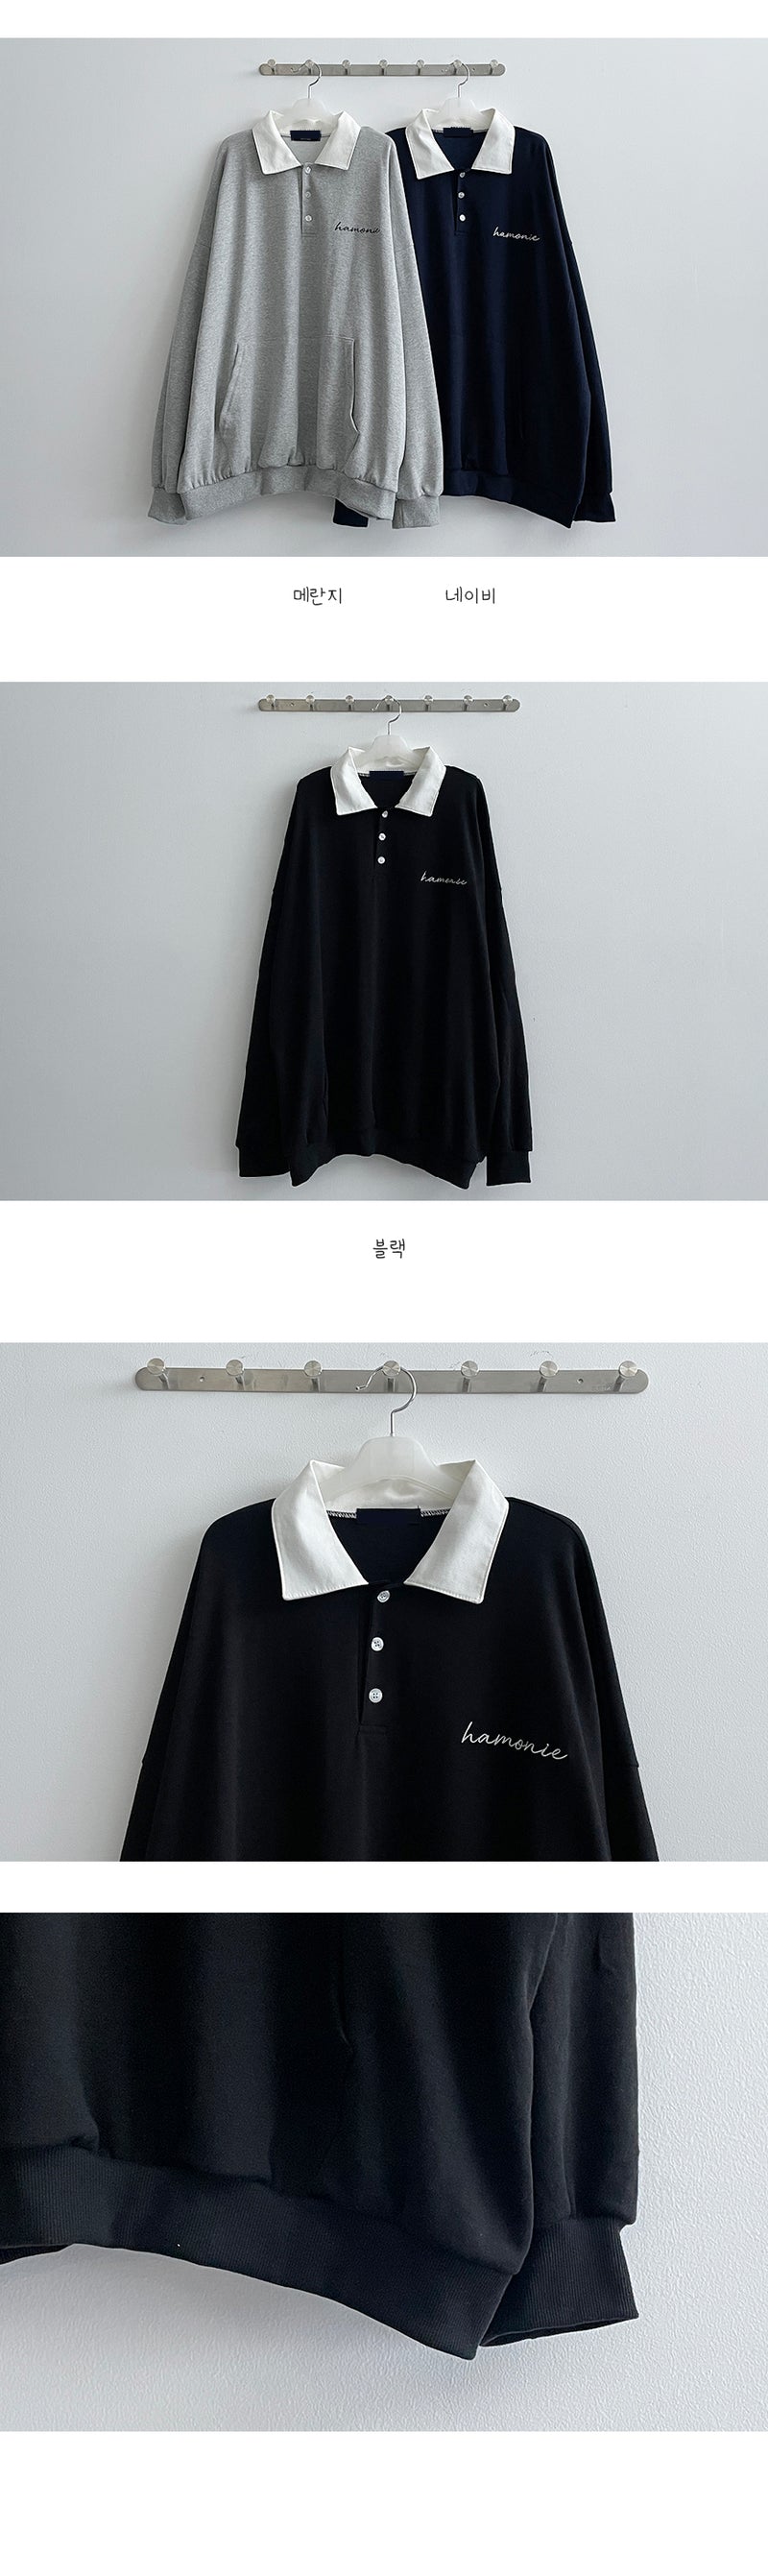 ハーモニーエンブロイダリーカラーボタンスウェットシャツ / Harmony Embroidery Collar Button Sweatshirt